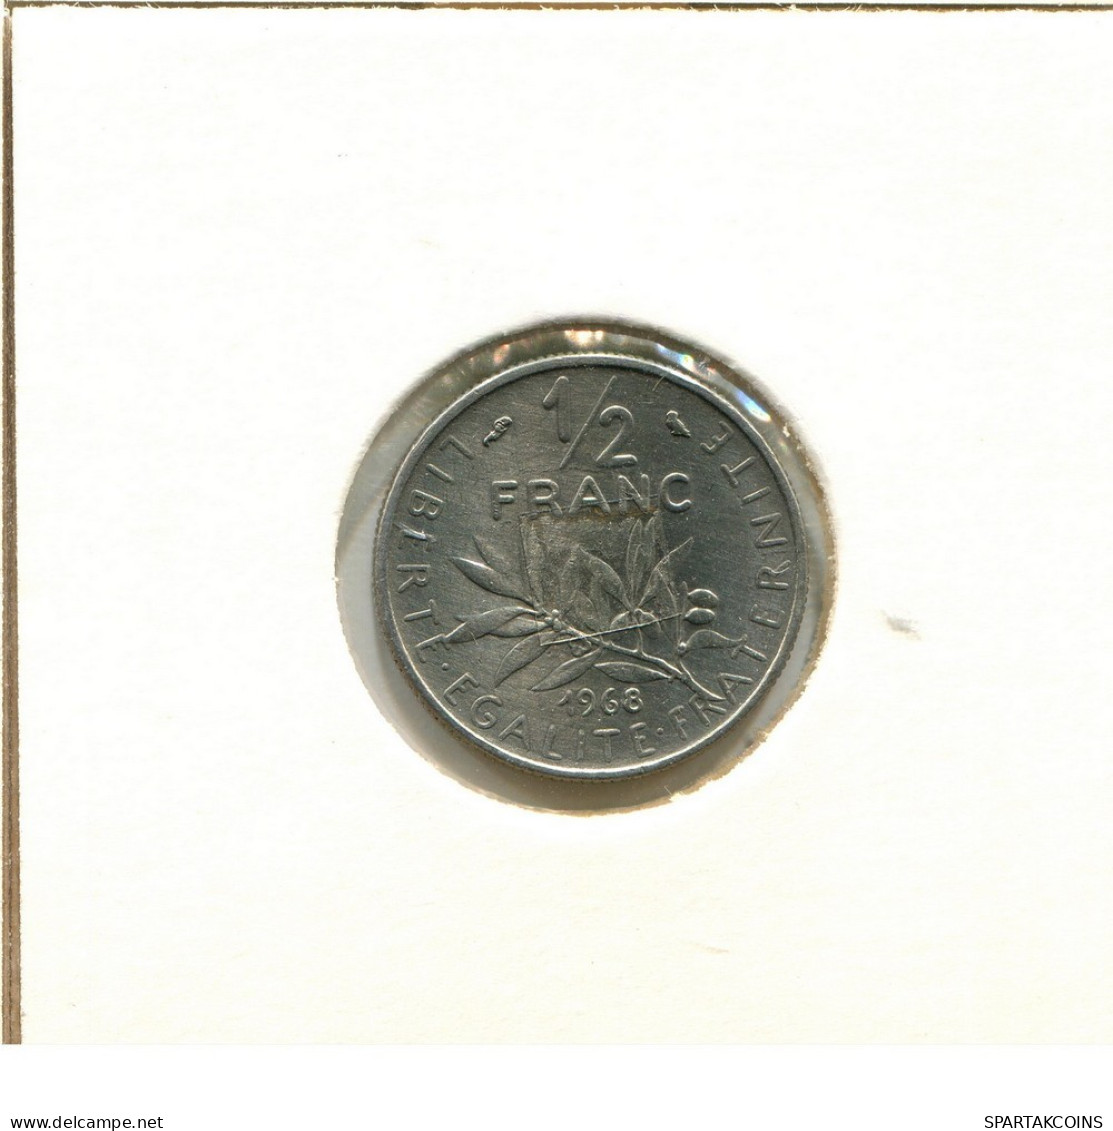 1/2 FRANC 1968 FRANCIA FRANCE Moneda #BB519.E.A - 1/2 Franc